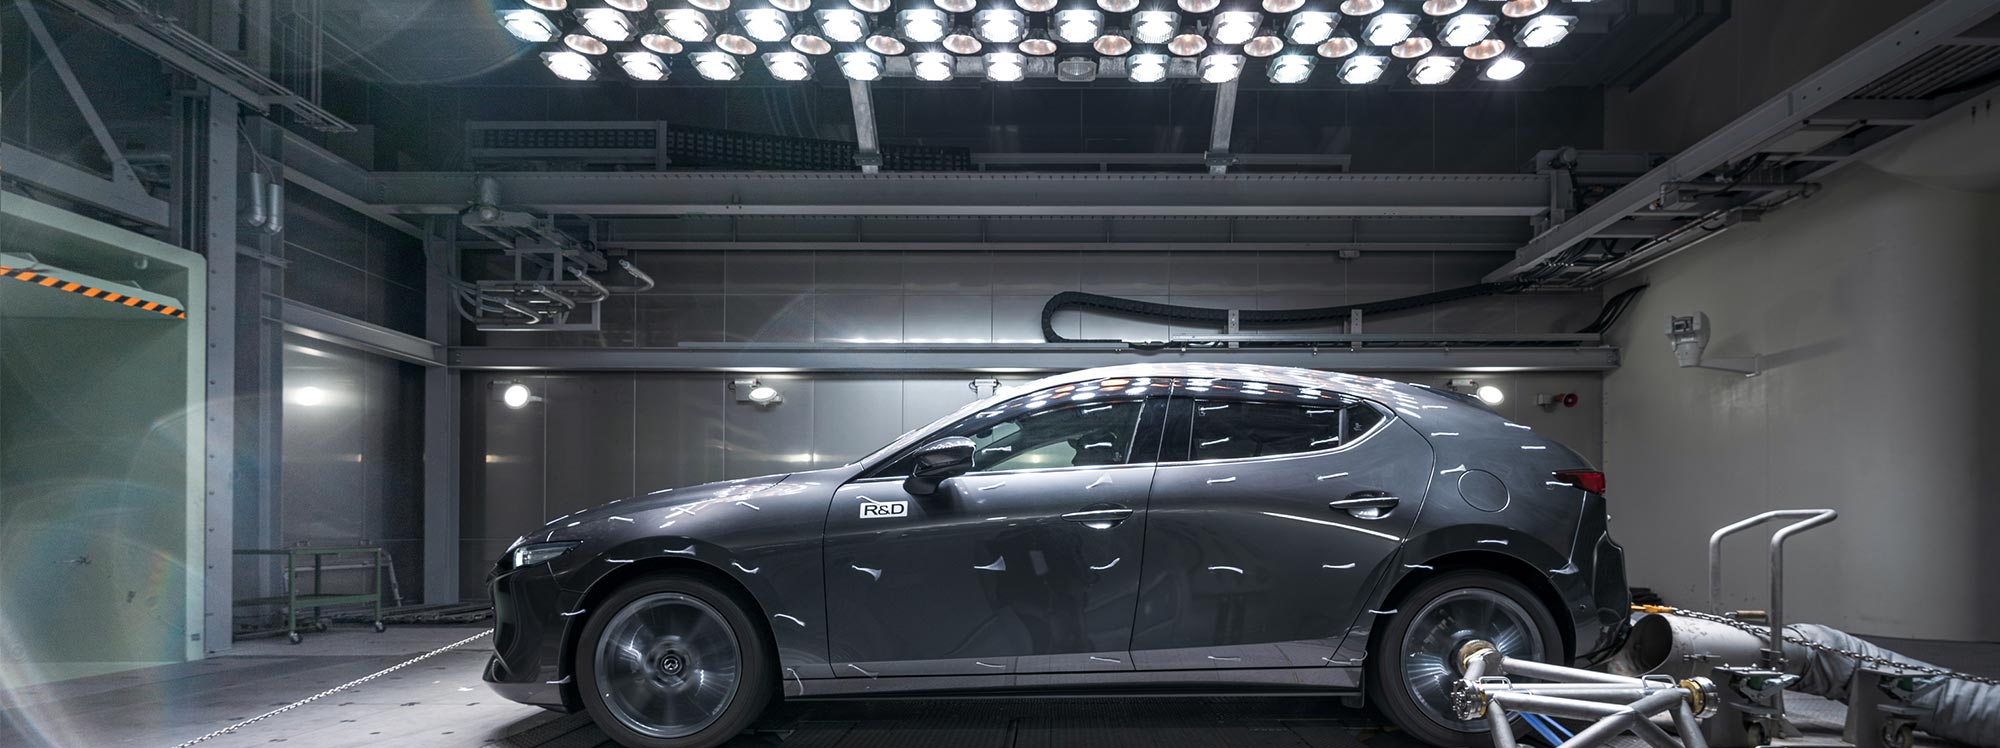 Mazda: Autos diseñados para durar